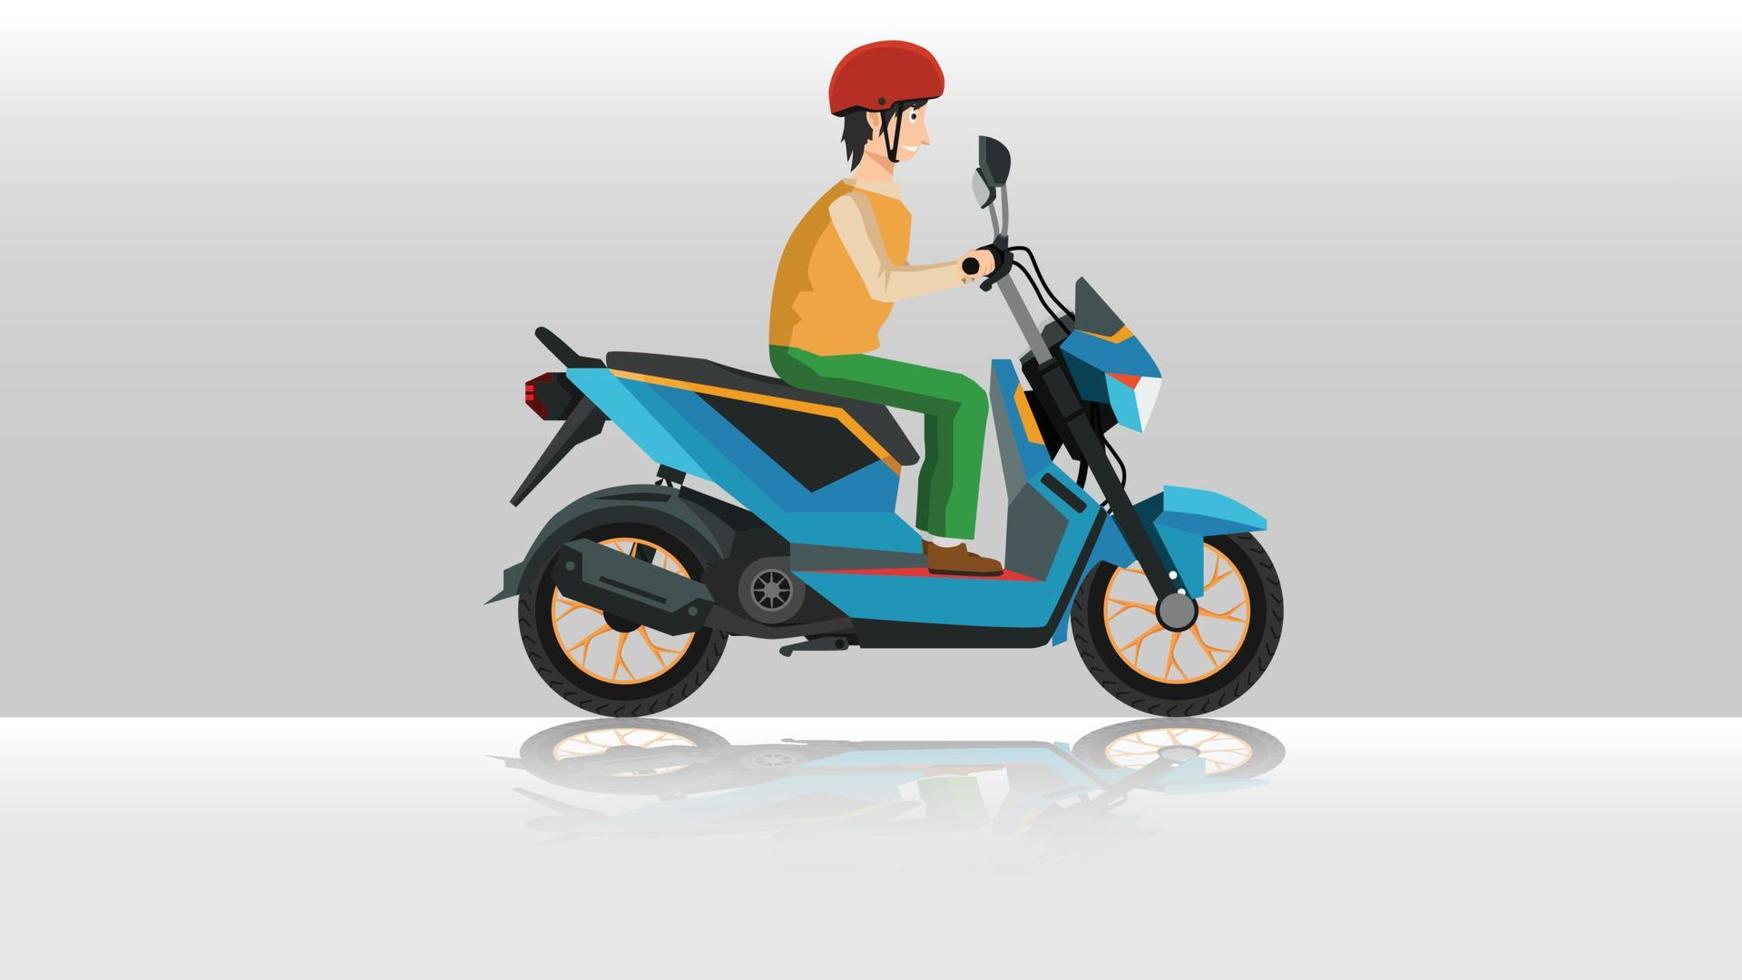 blå motorcykel med en man i en hjälm som sitter. med skuggan av motorcykel på marken. vektor och illustratör design.